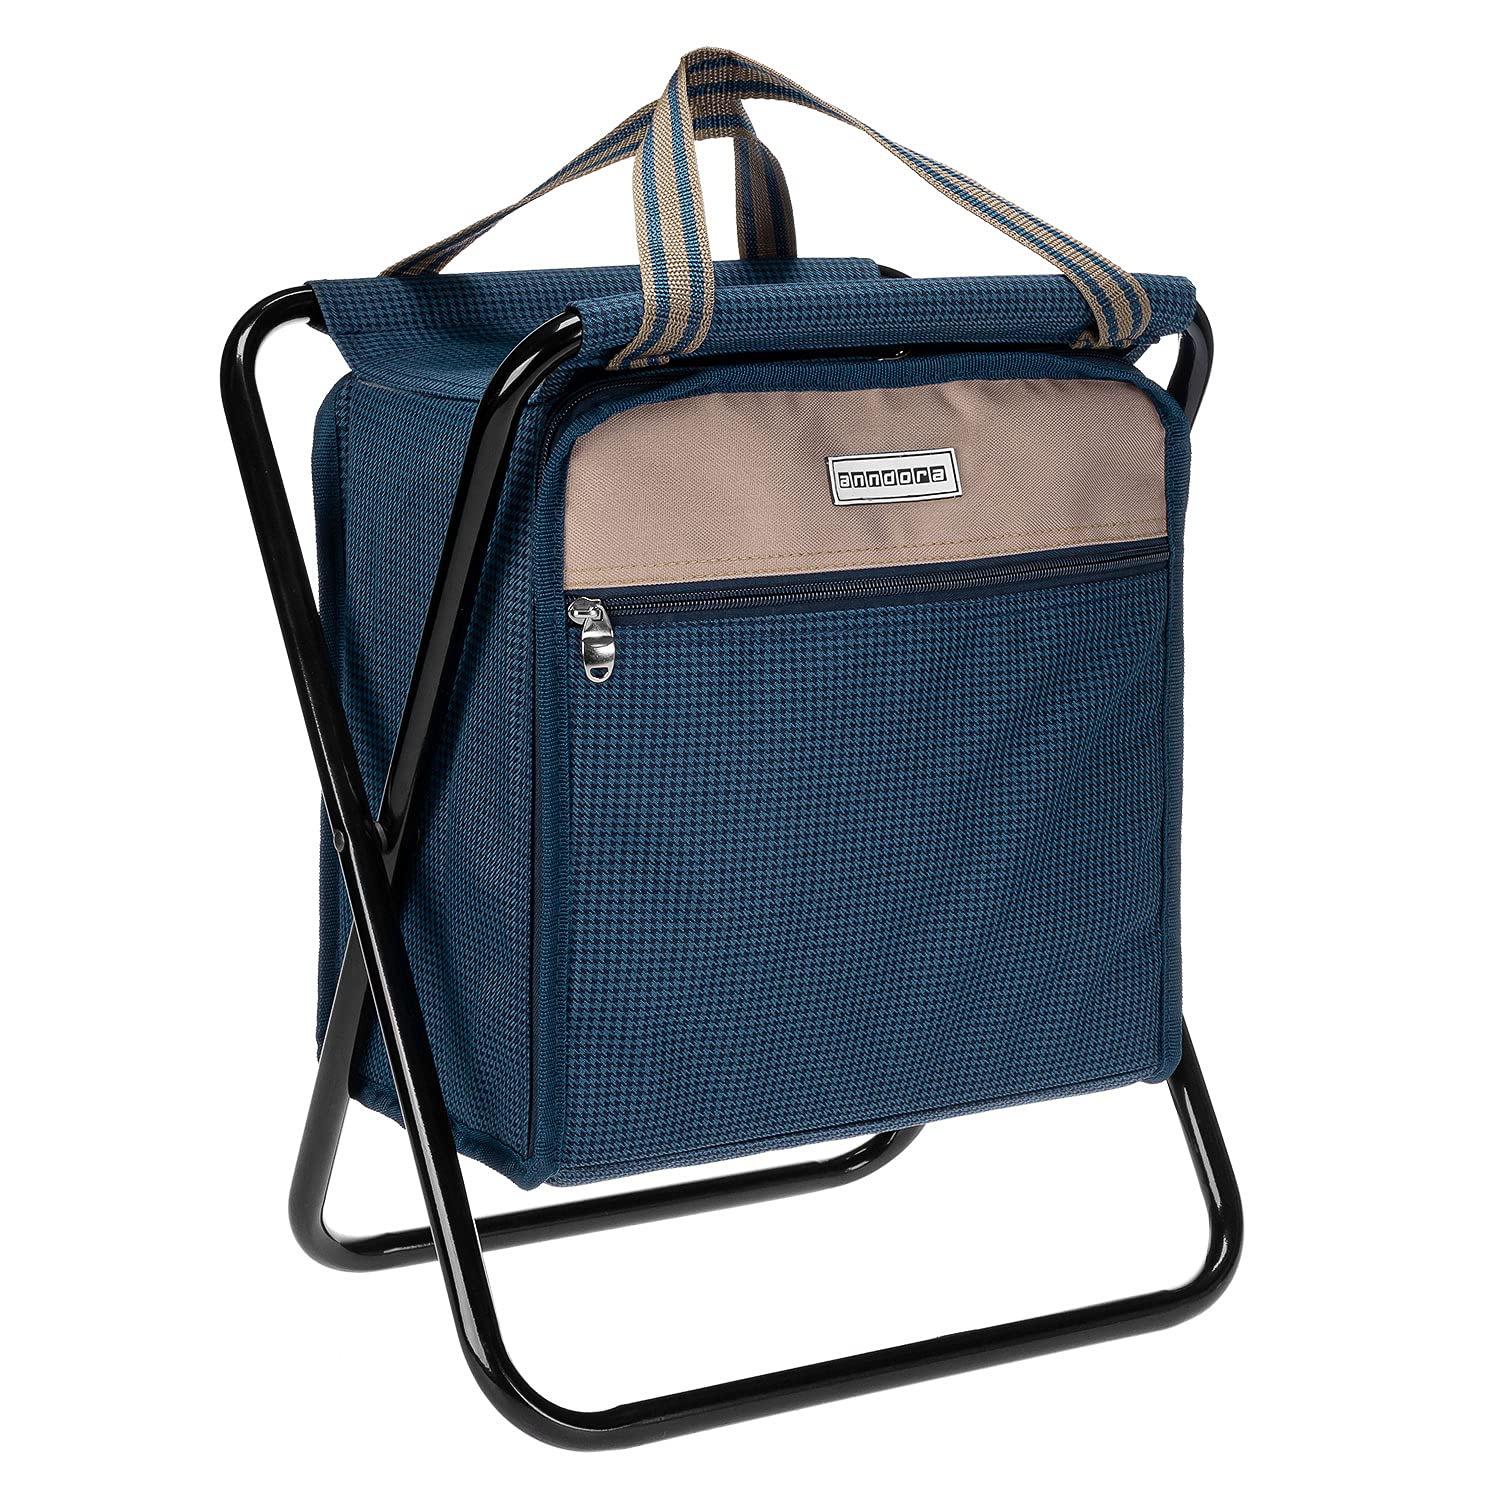 anndora Easy Cooler 2in1 - Kühltasche mit Sitzfunktion - Campinghocker, Klapphocker und Kühltasche in einem - Farbe Hahnentritt blau